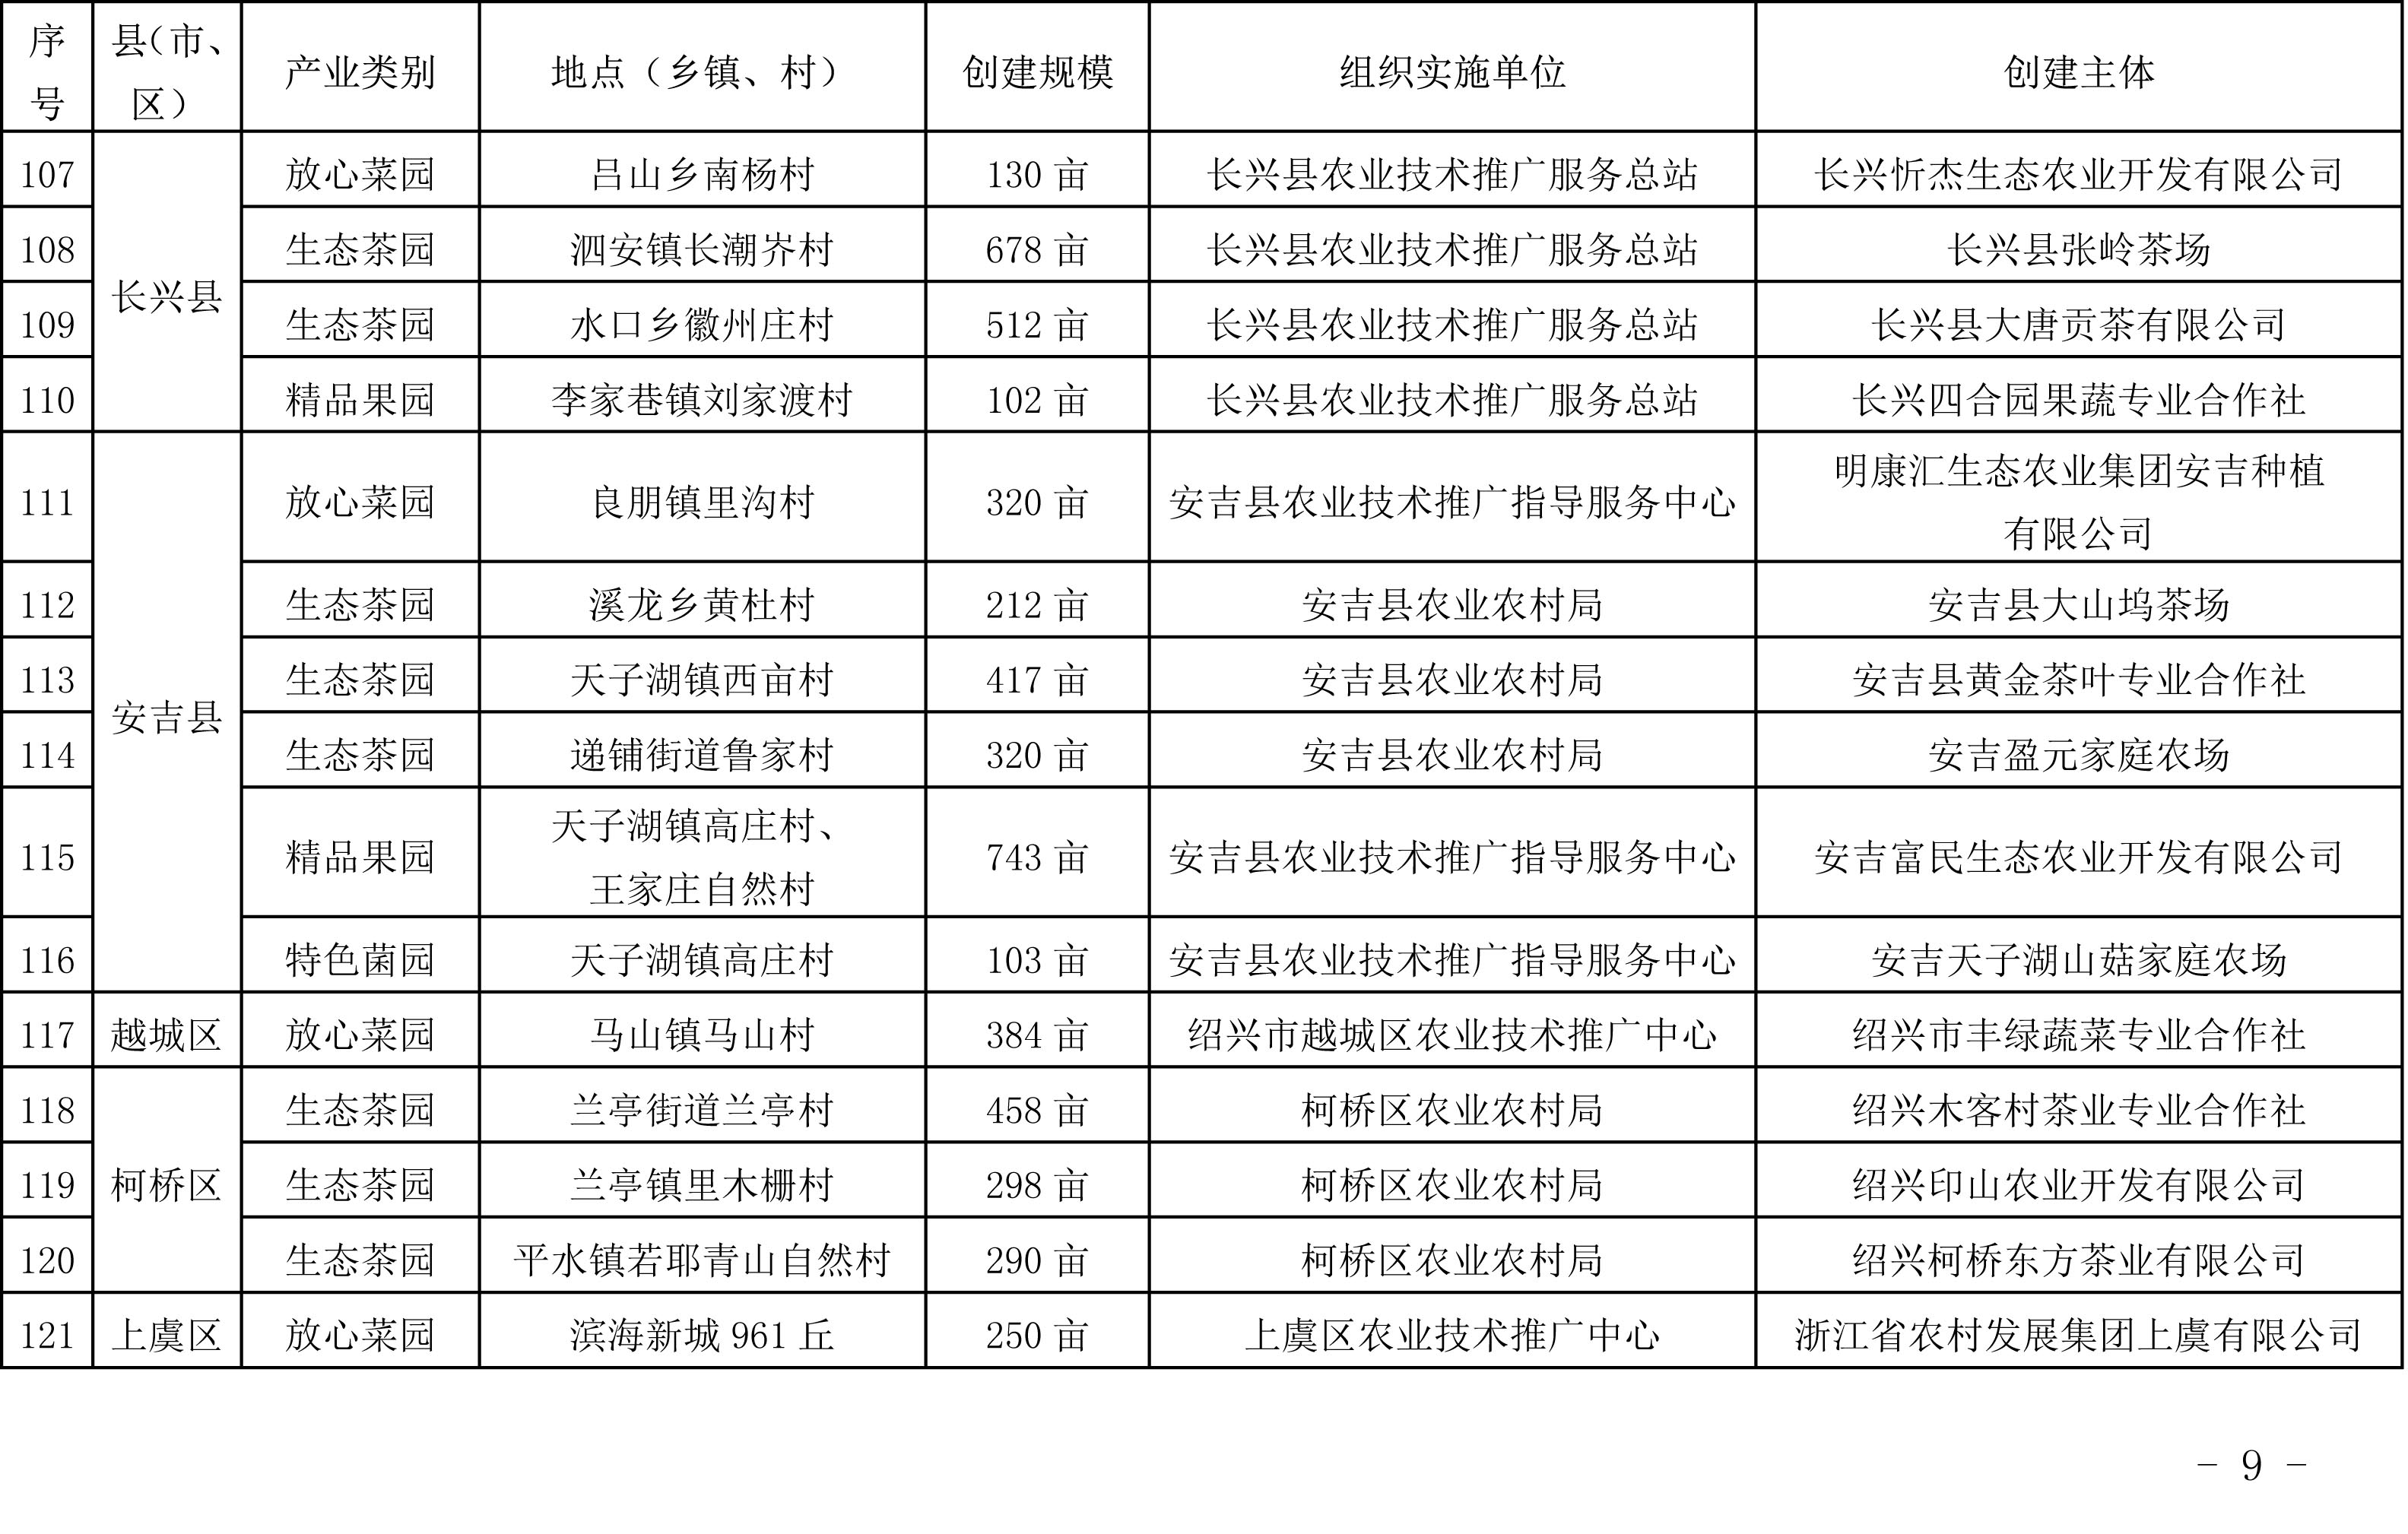 浙江省农业农村厅关于公布2019年度种植业“五园”创建省级示范基地名单的通知(图9)